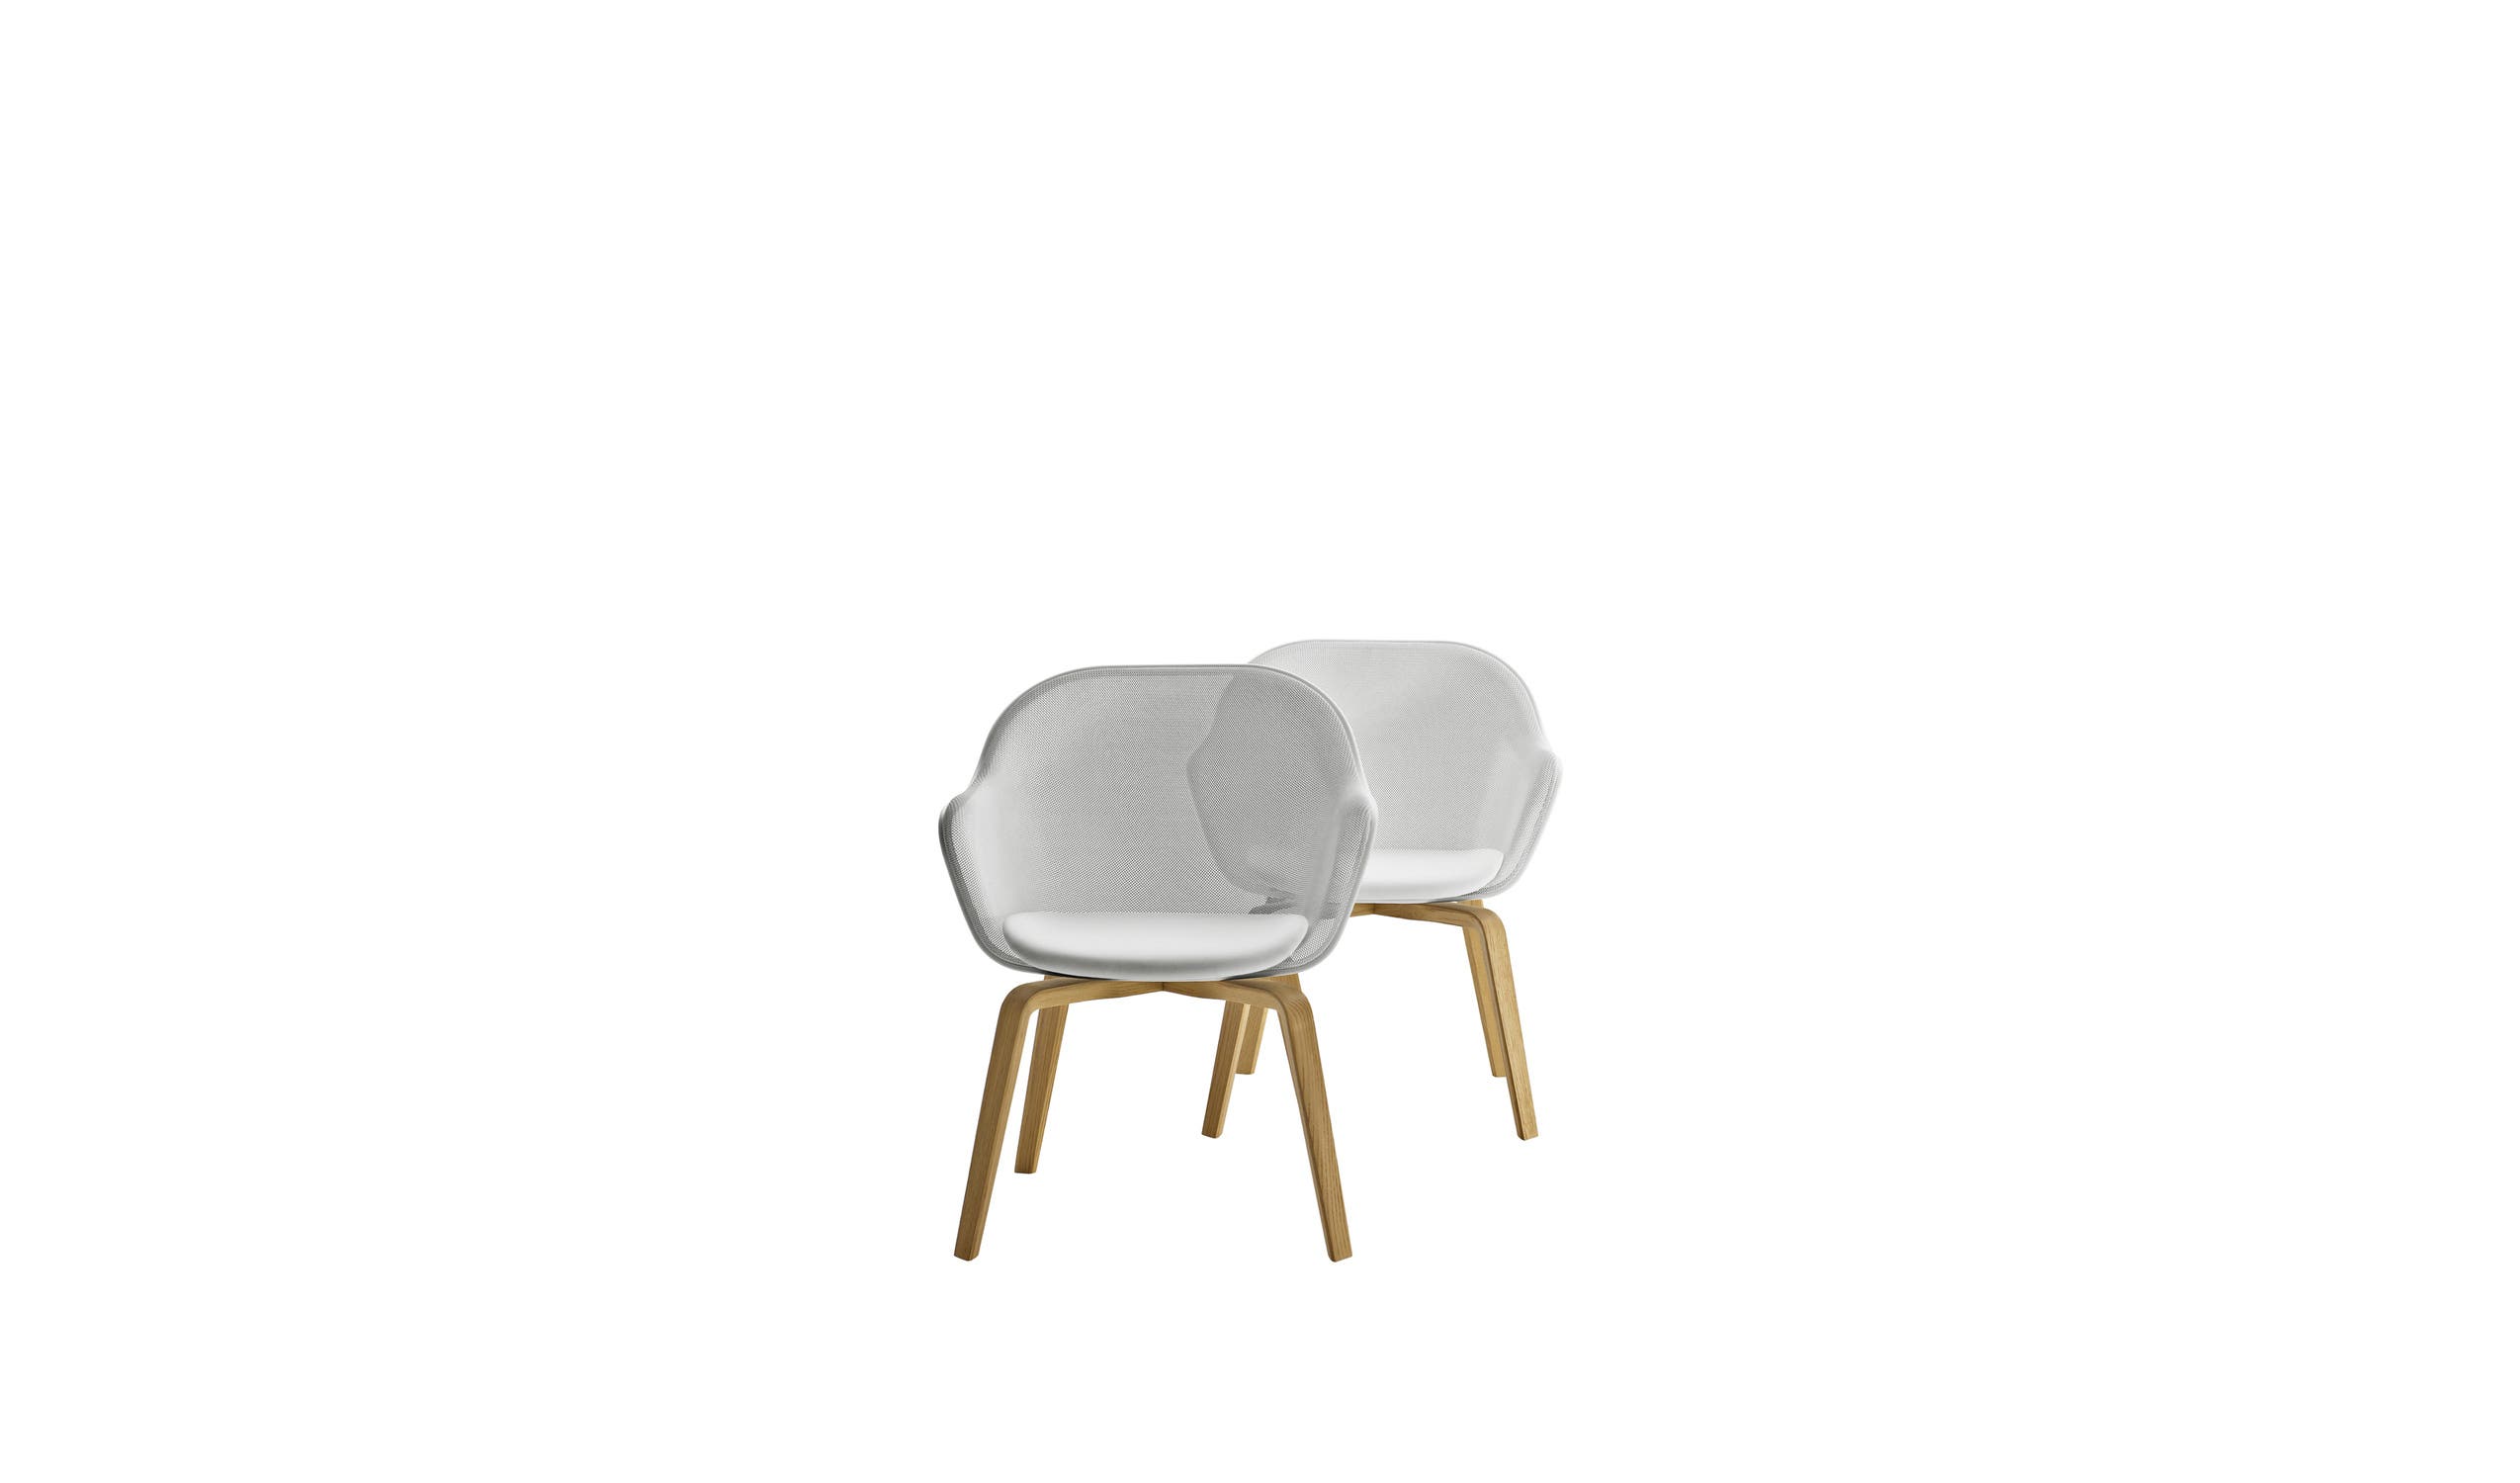 Italian designer modern chairs  - Iuta '14 Chairs